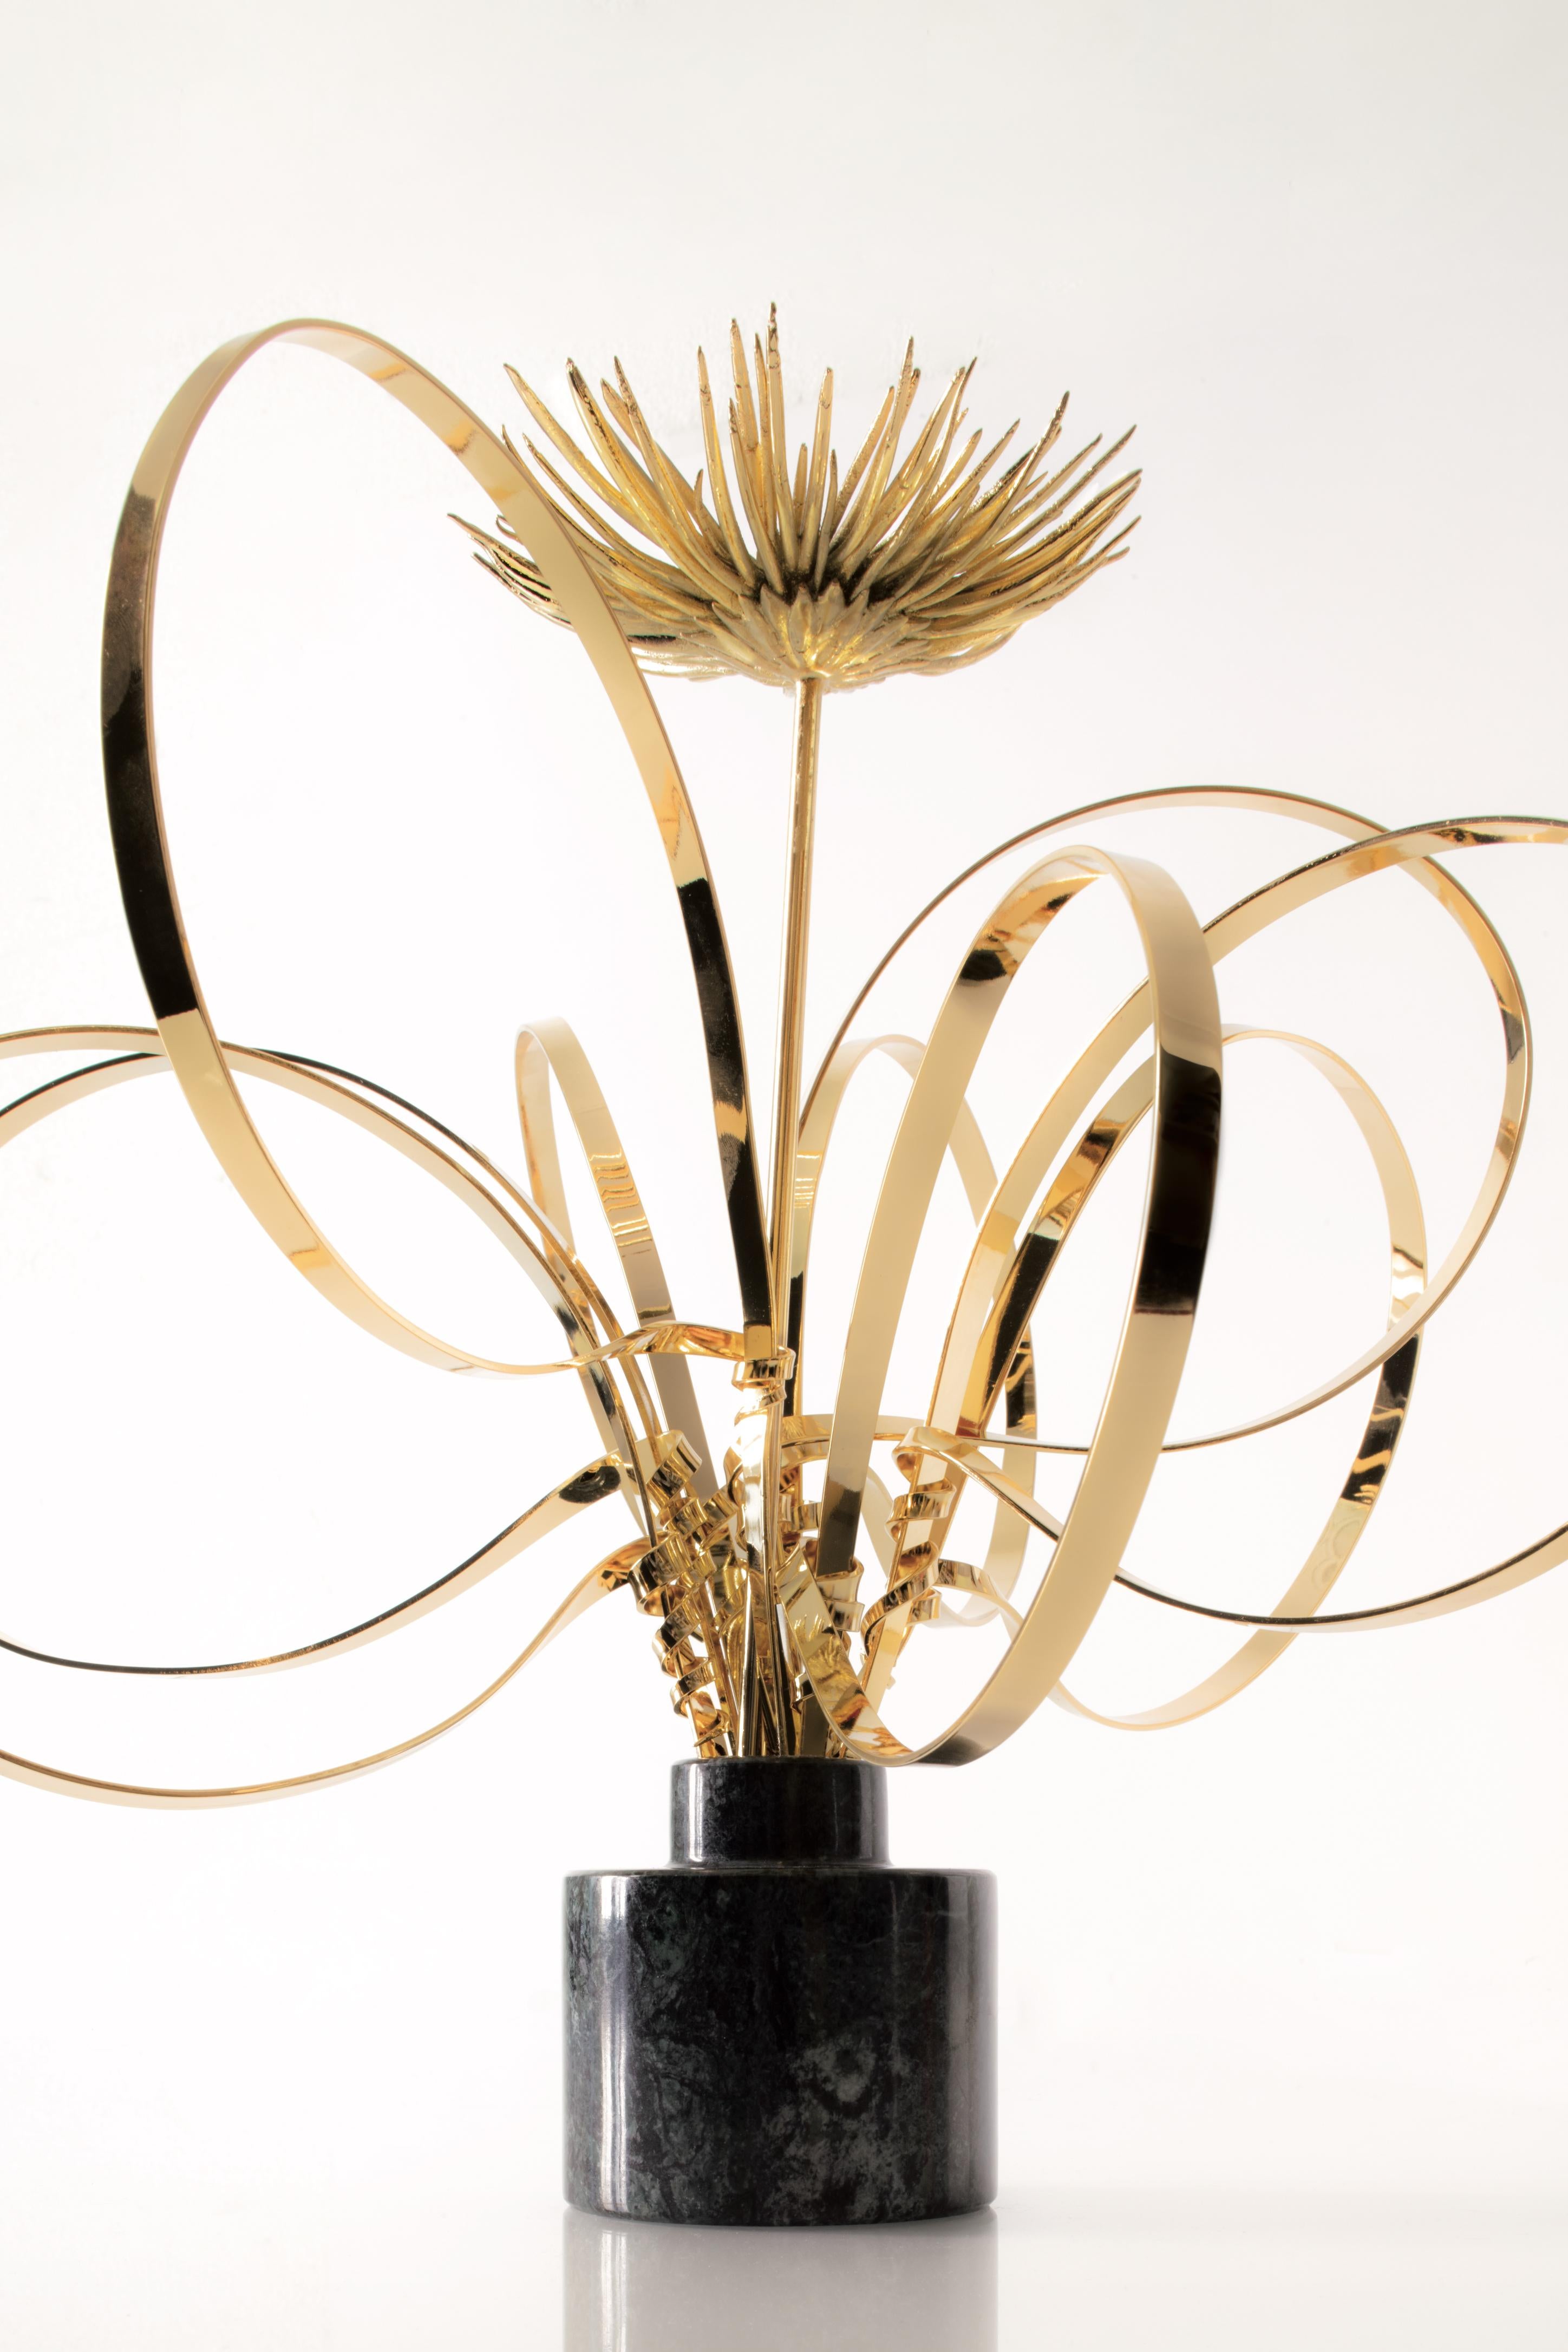 Other Swirls and Mum Sculptureby Art Flower Maker For Sale